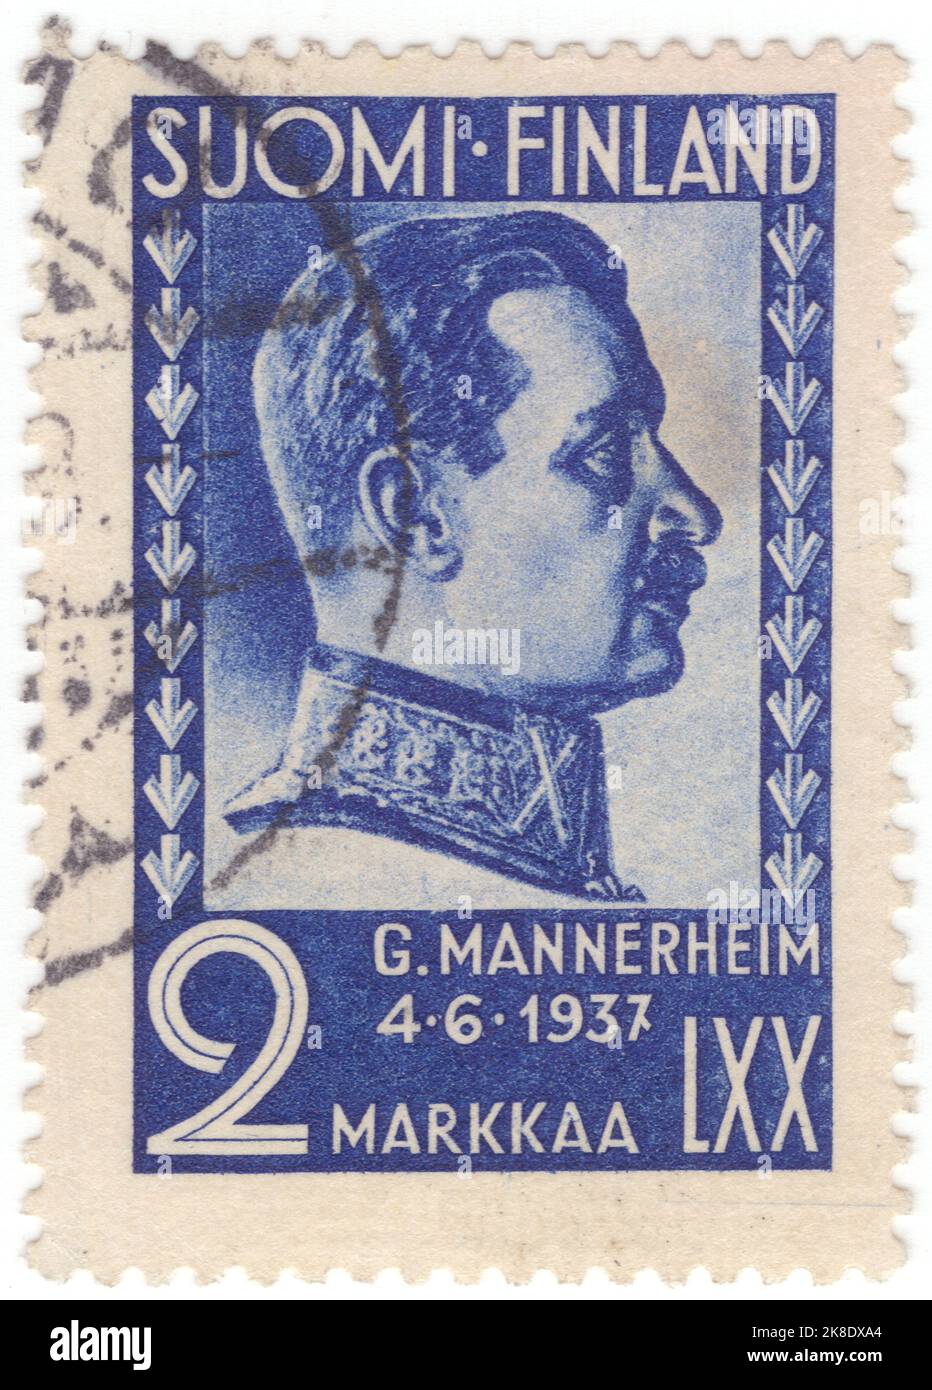 FINNLAND - 1937. Juni 4: Eine ultramarine Briefmarke aus dem Jahr 2, auf der das Porträt von Gustaf Mannerheim abgebildet ist. 70. Geburtstag von Feldmarschall Carl Gustaf Manner Stockfoto